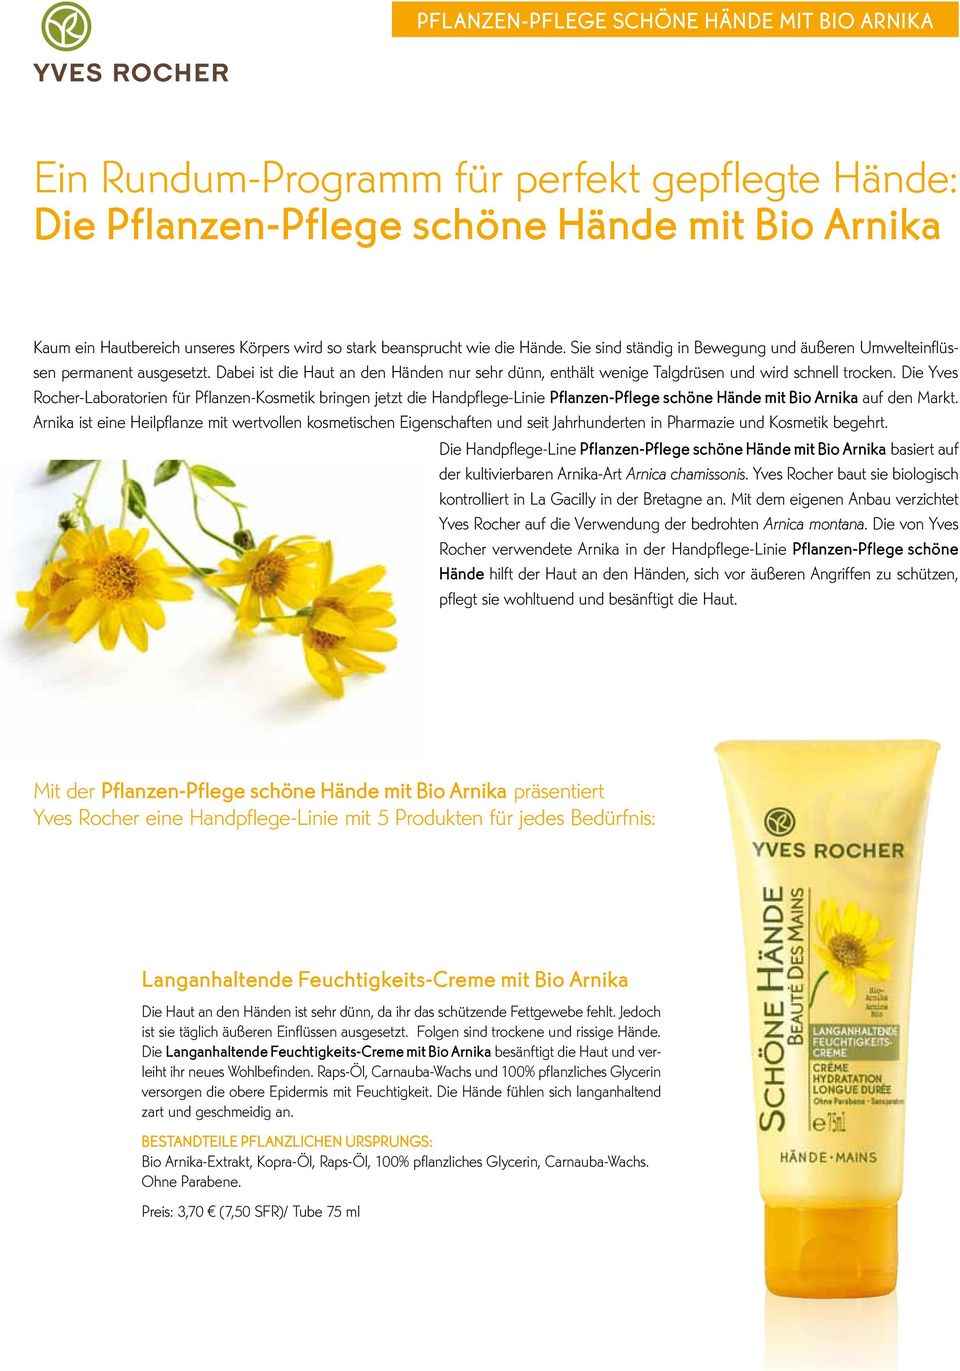 Die Yves Rocher-Laboratorien für Pflanzen-Kosmetik bringen jetzt die Handpflege-Linie Pflanzen-Pflege schöne Hände mit Bio Arnika auf den Markt.